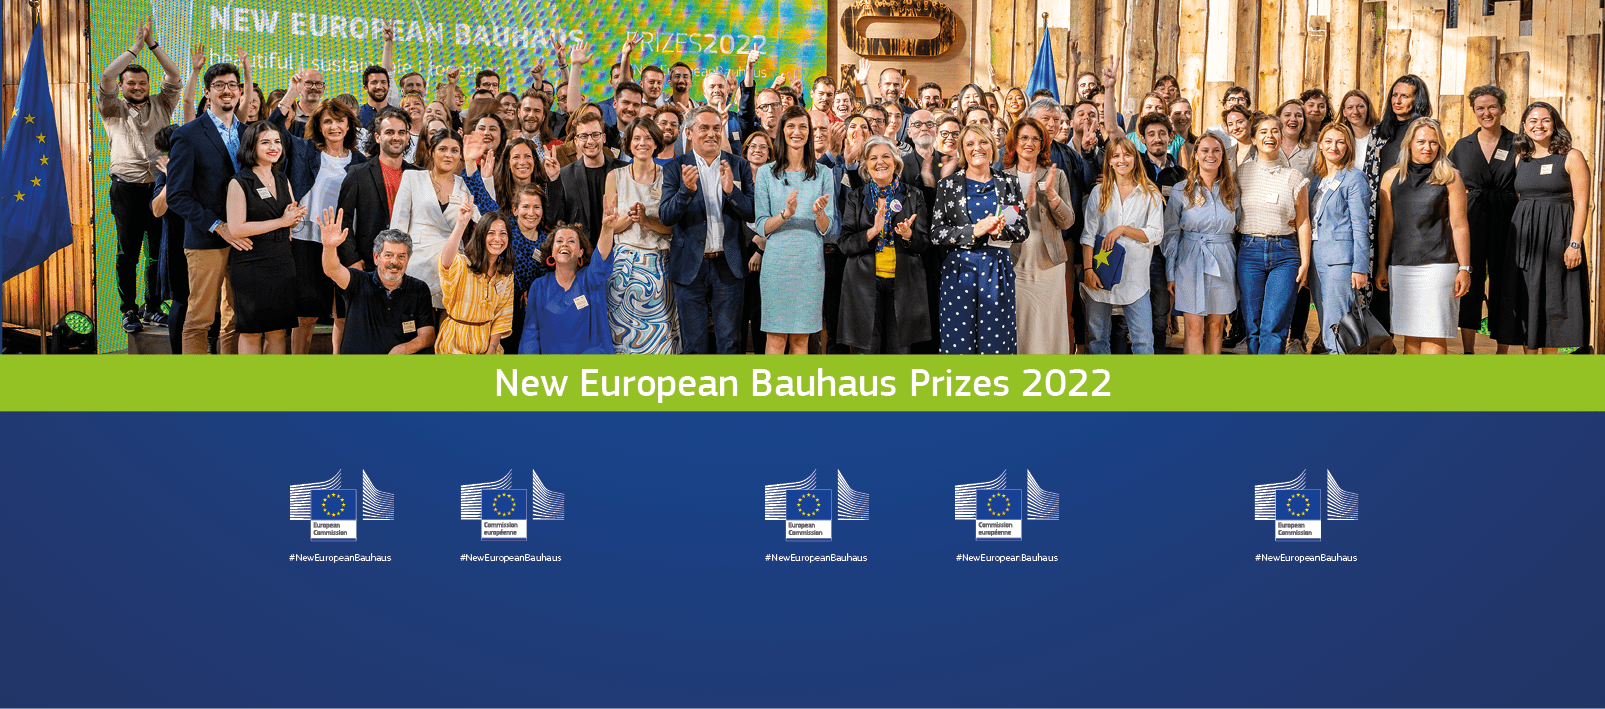 Premios 2022 del Festival de la Nueva Bauhaus Europea: una exhibición del ingenio europeo